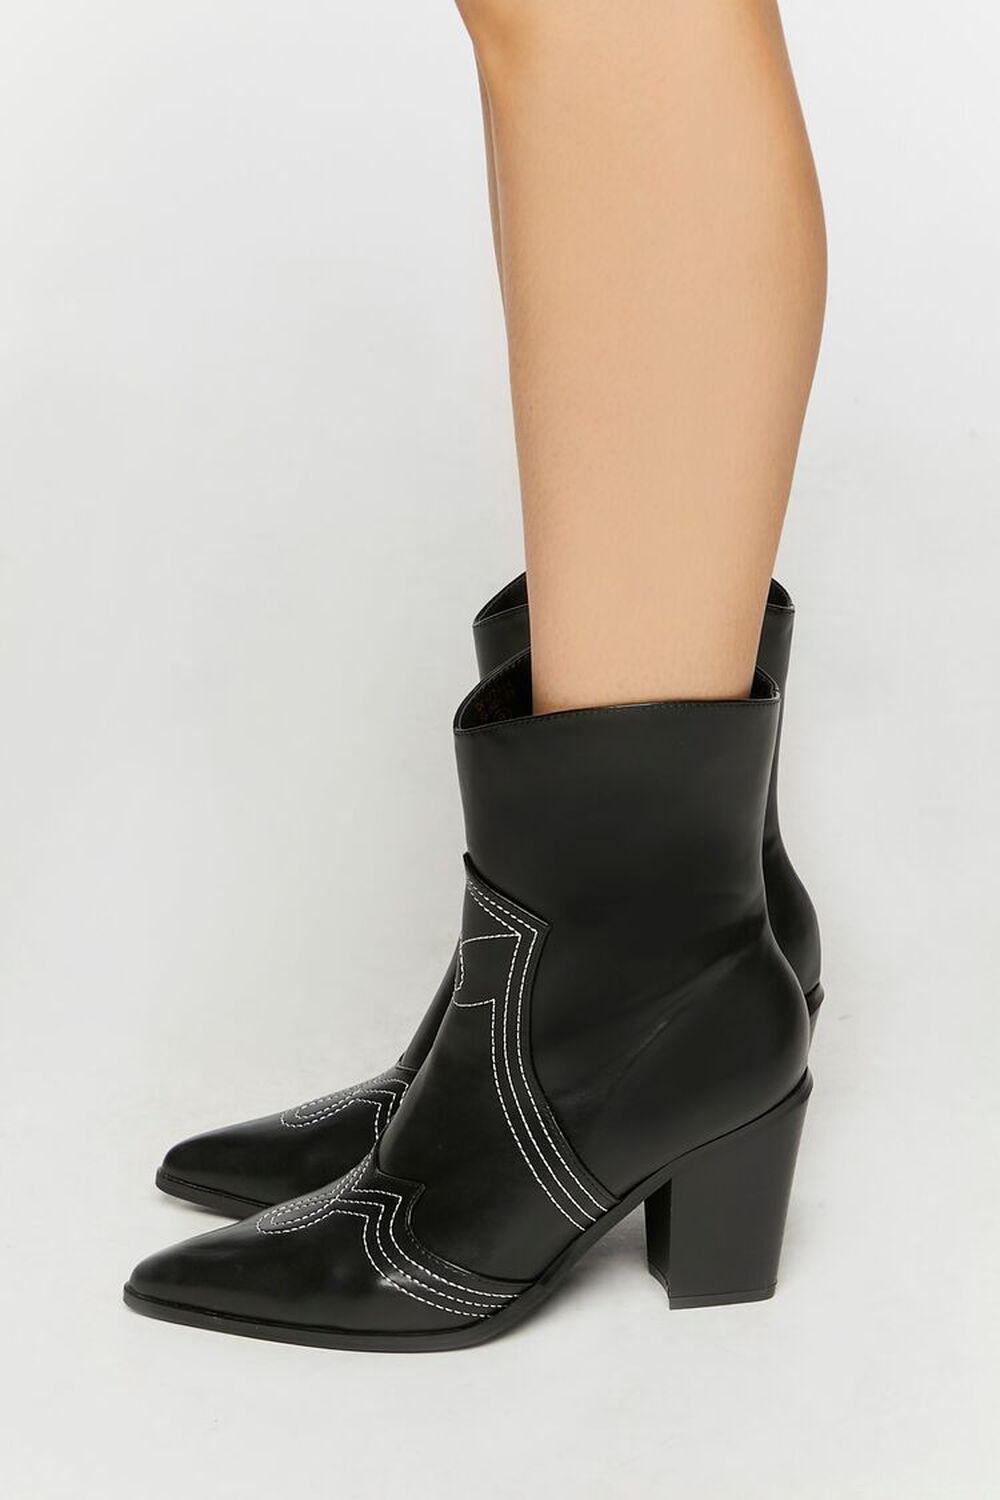 BLACK Faux Leather Contrast Cowboy Boots, image 3